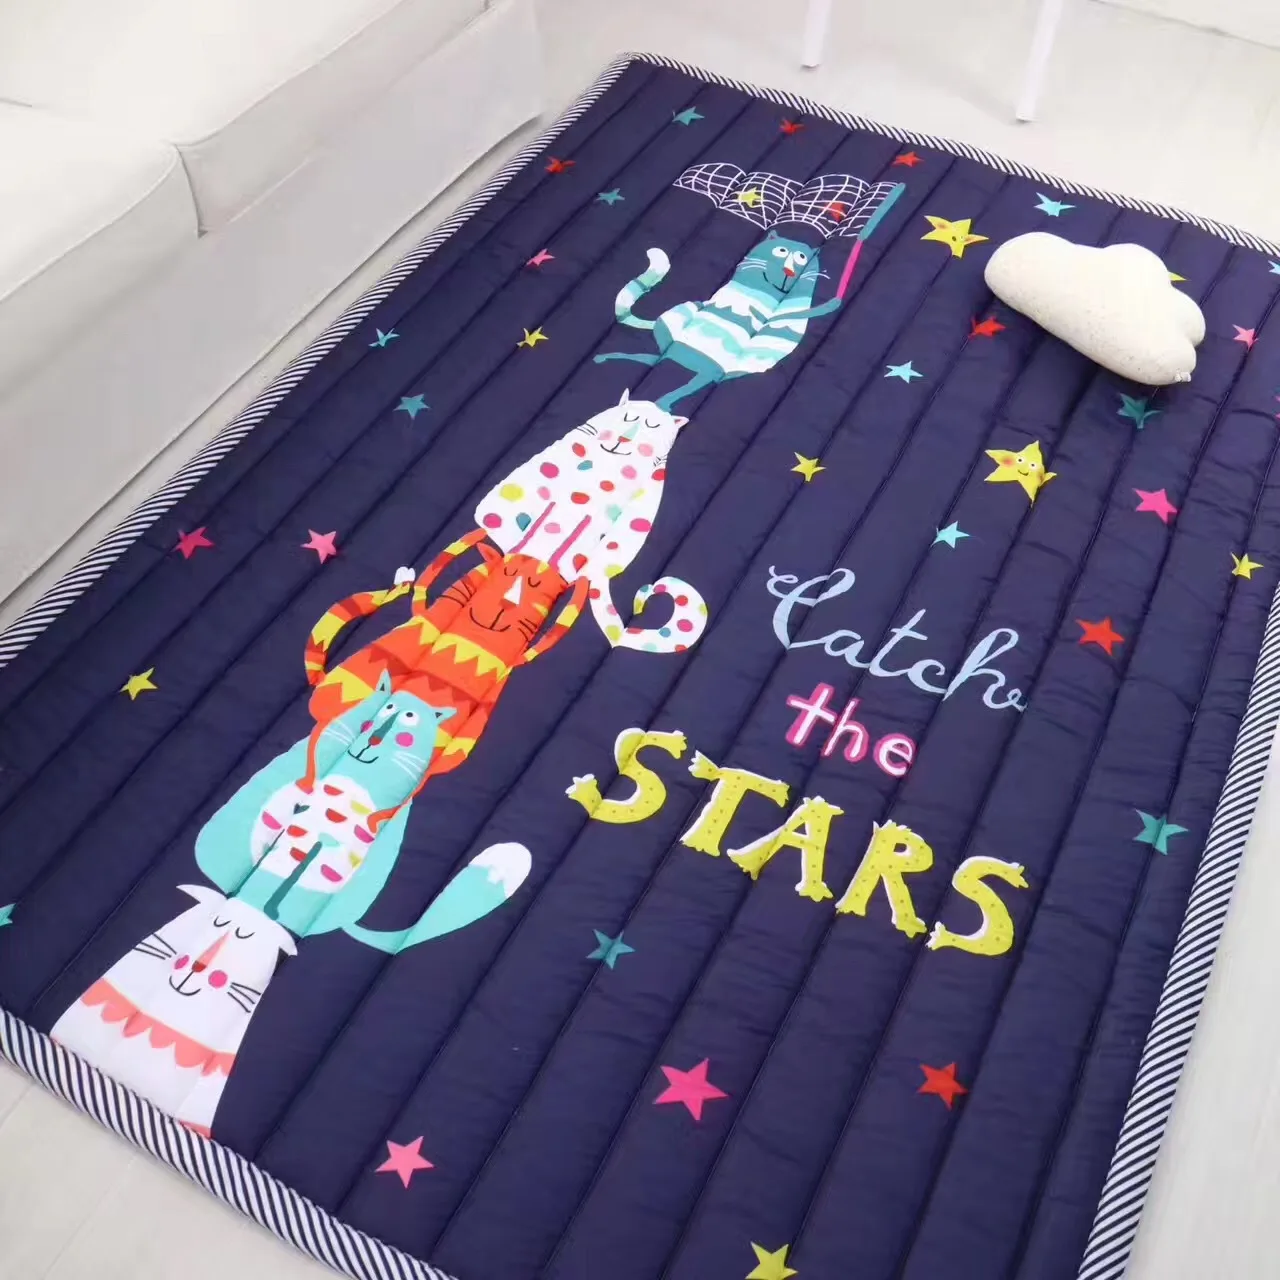 Ins мультяшный коврик мягкий складной детский коврик для лазания детское сиденье игровой игрушечный планшет одеяло - Цвет: Темно-синий